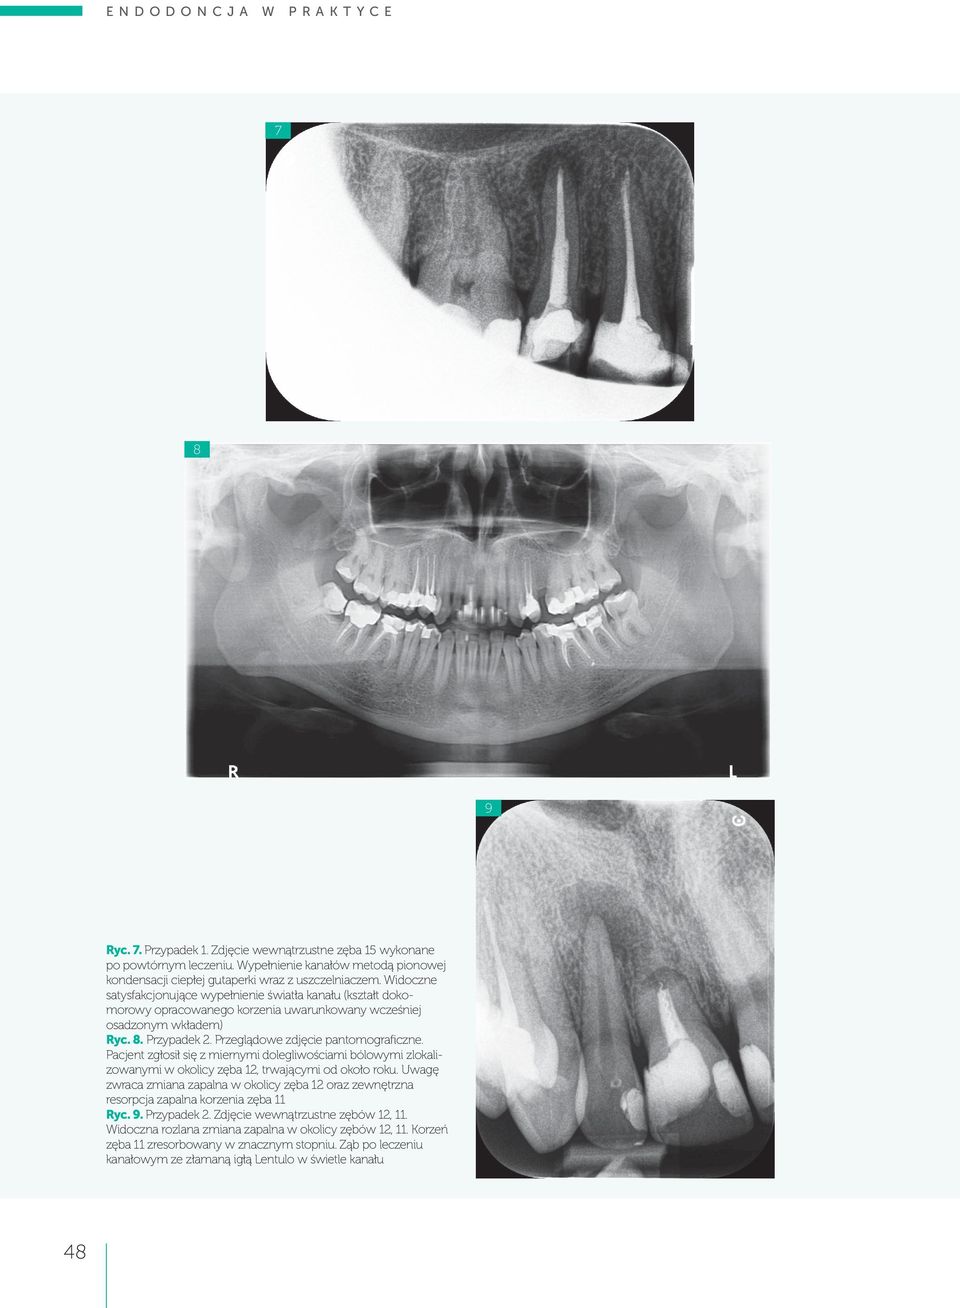 Pacjent zgłosił się z miernymi dolegliwościami bólowymi zlokalizowanymi w okolicy zęba 12, trwającymi od około roku.